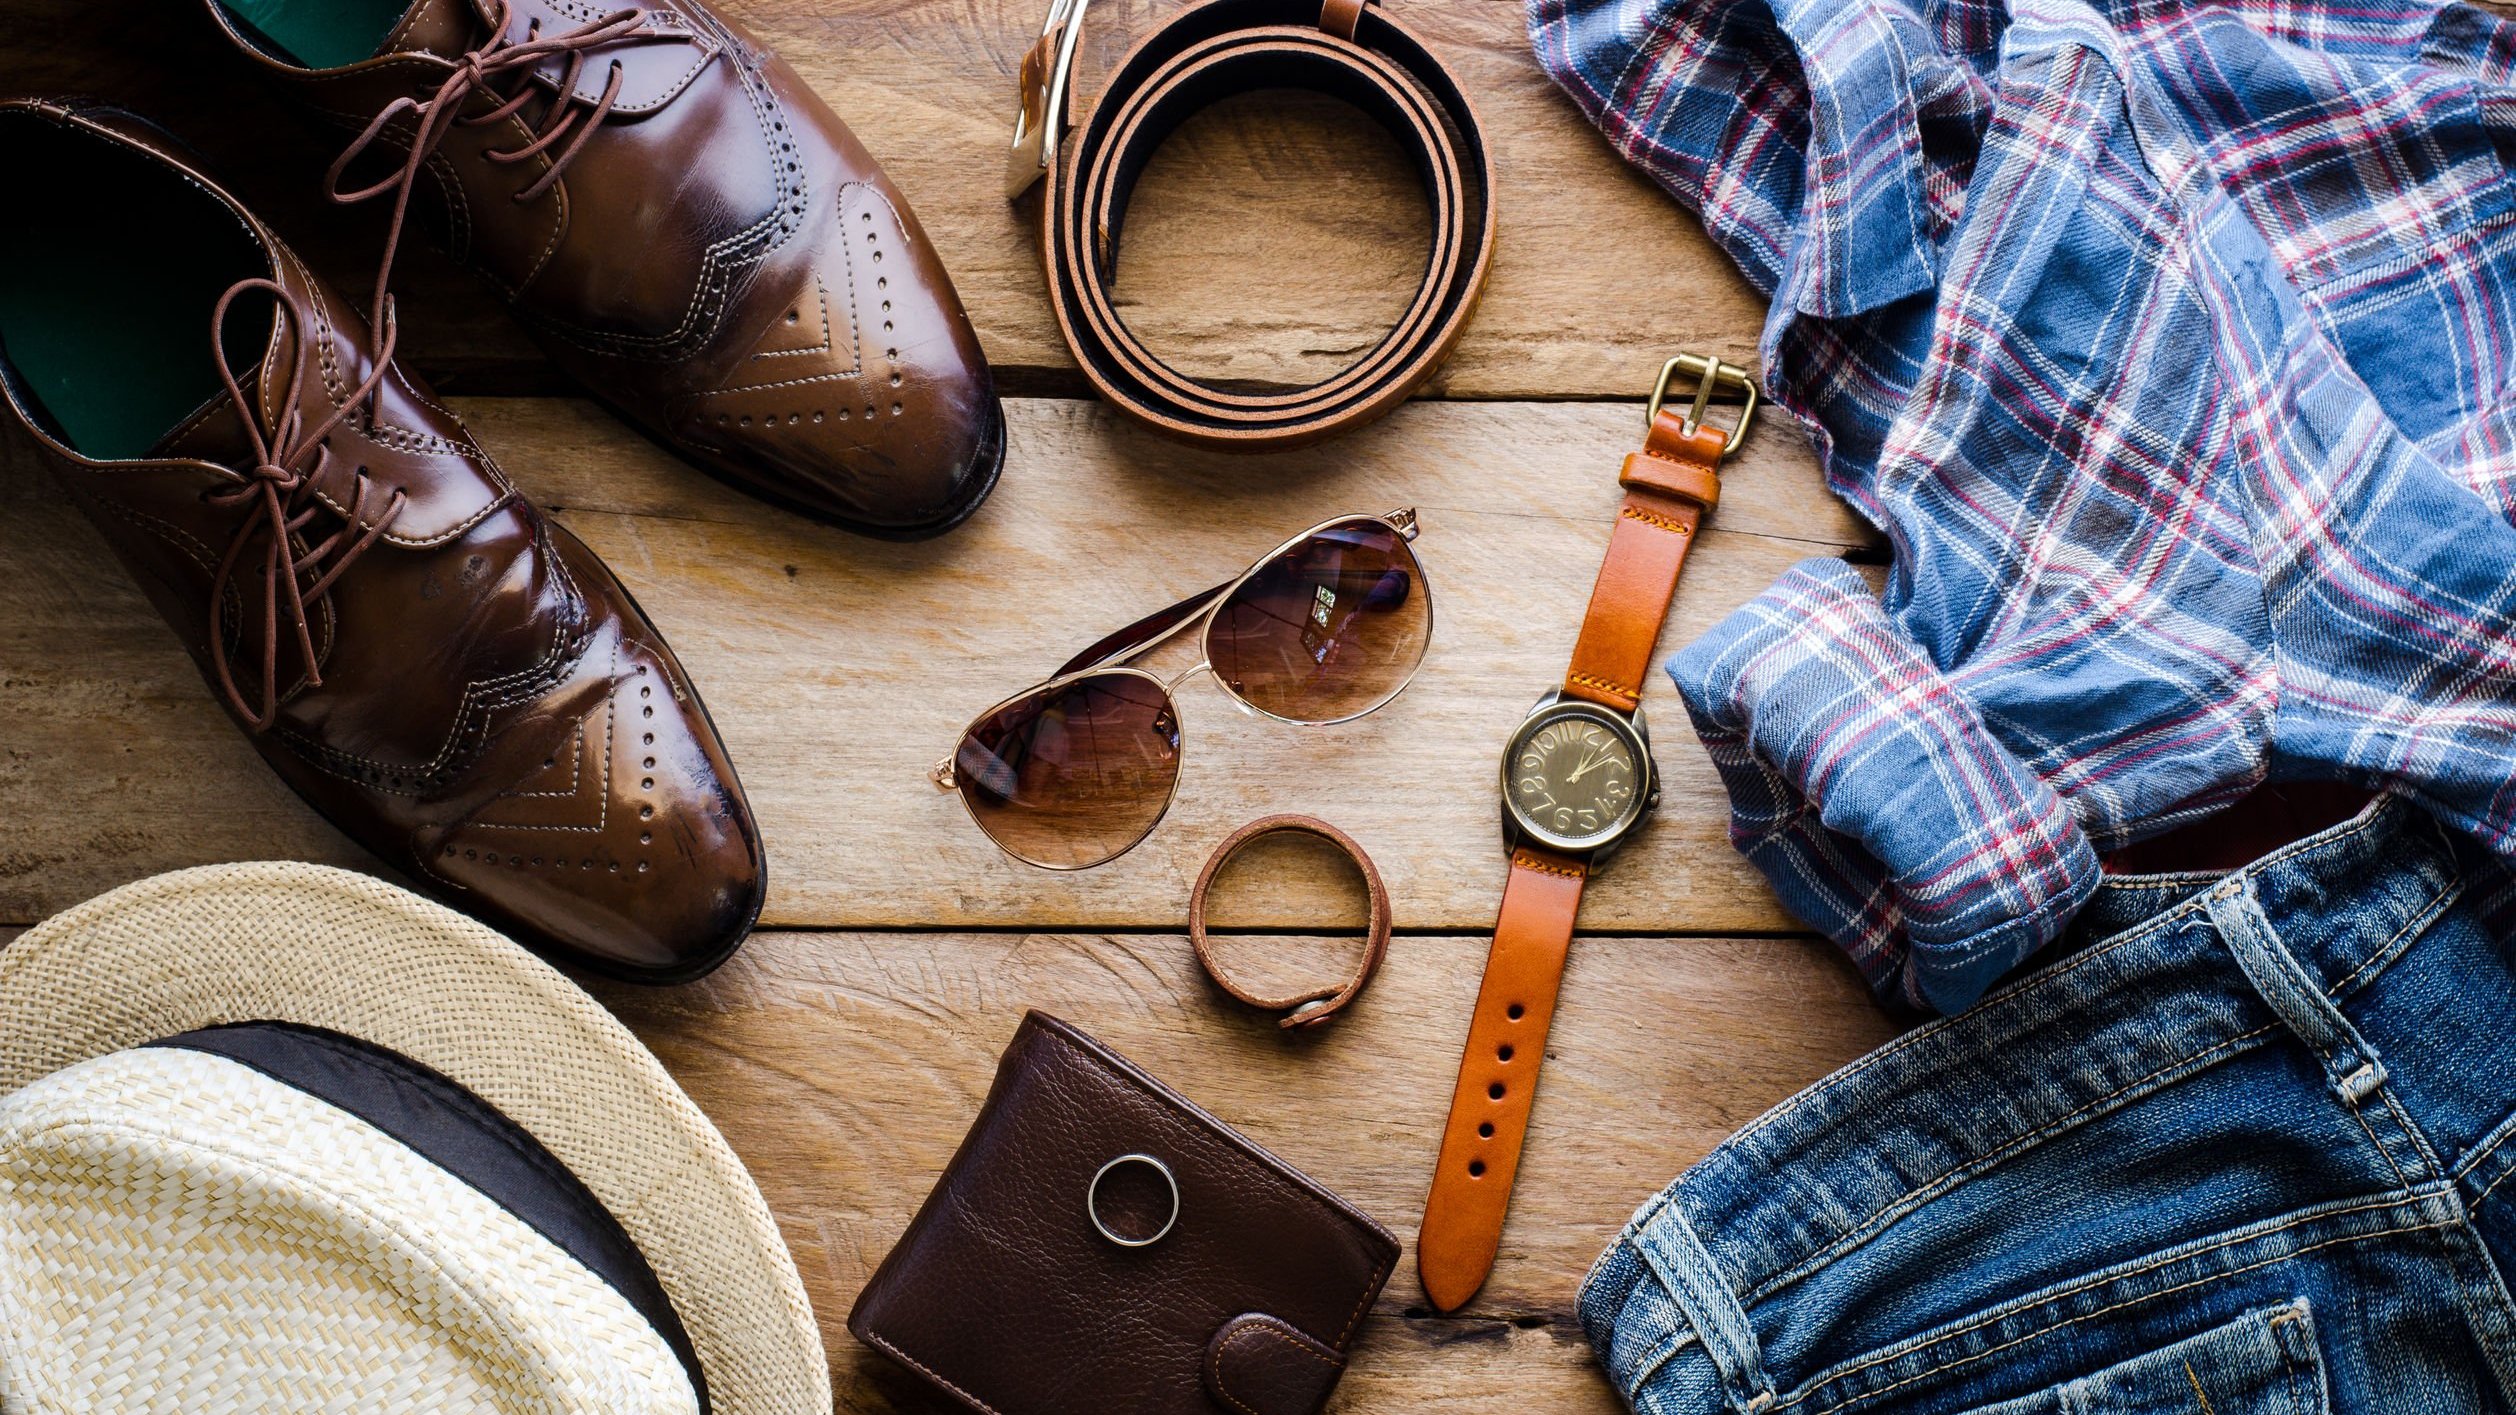 Acessórios masculinos como cinto, óculos escuro, relógio de pulso, sapatos, carteira e uma camisa.